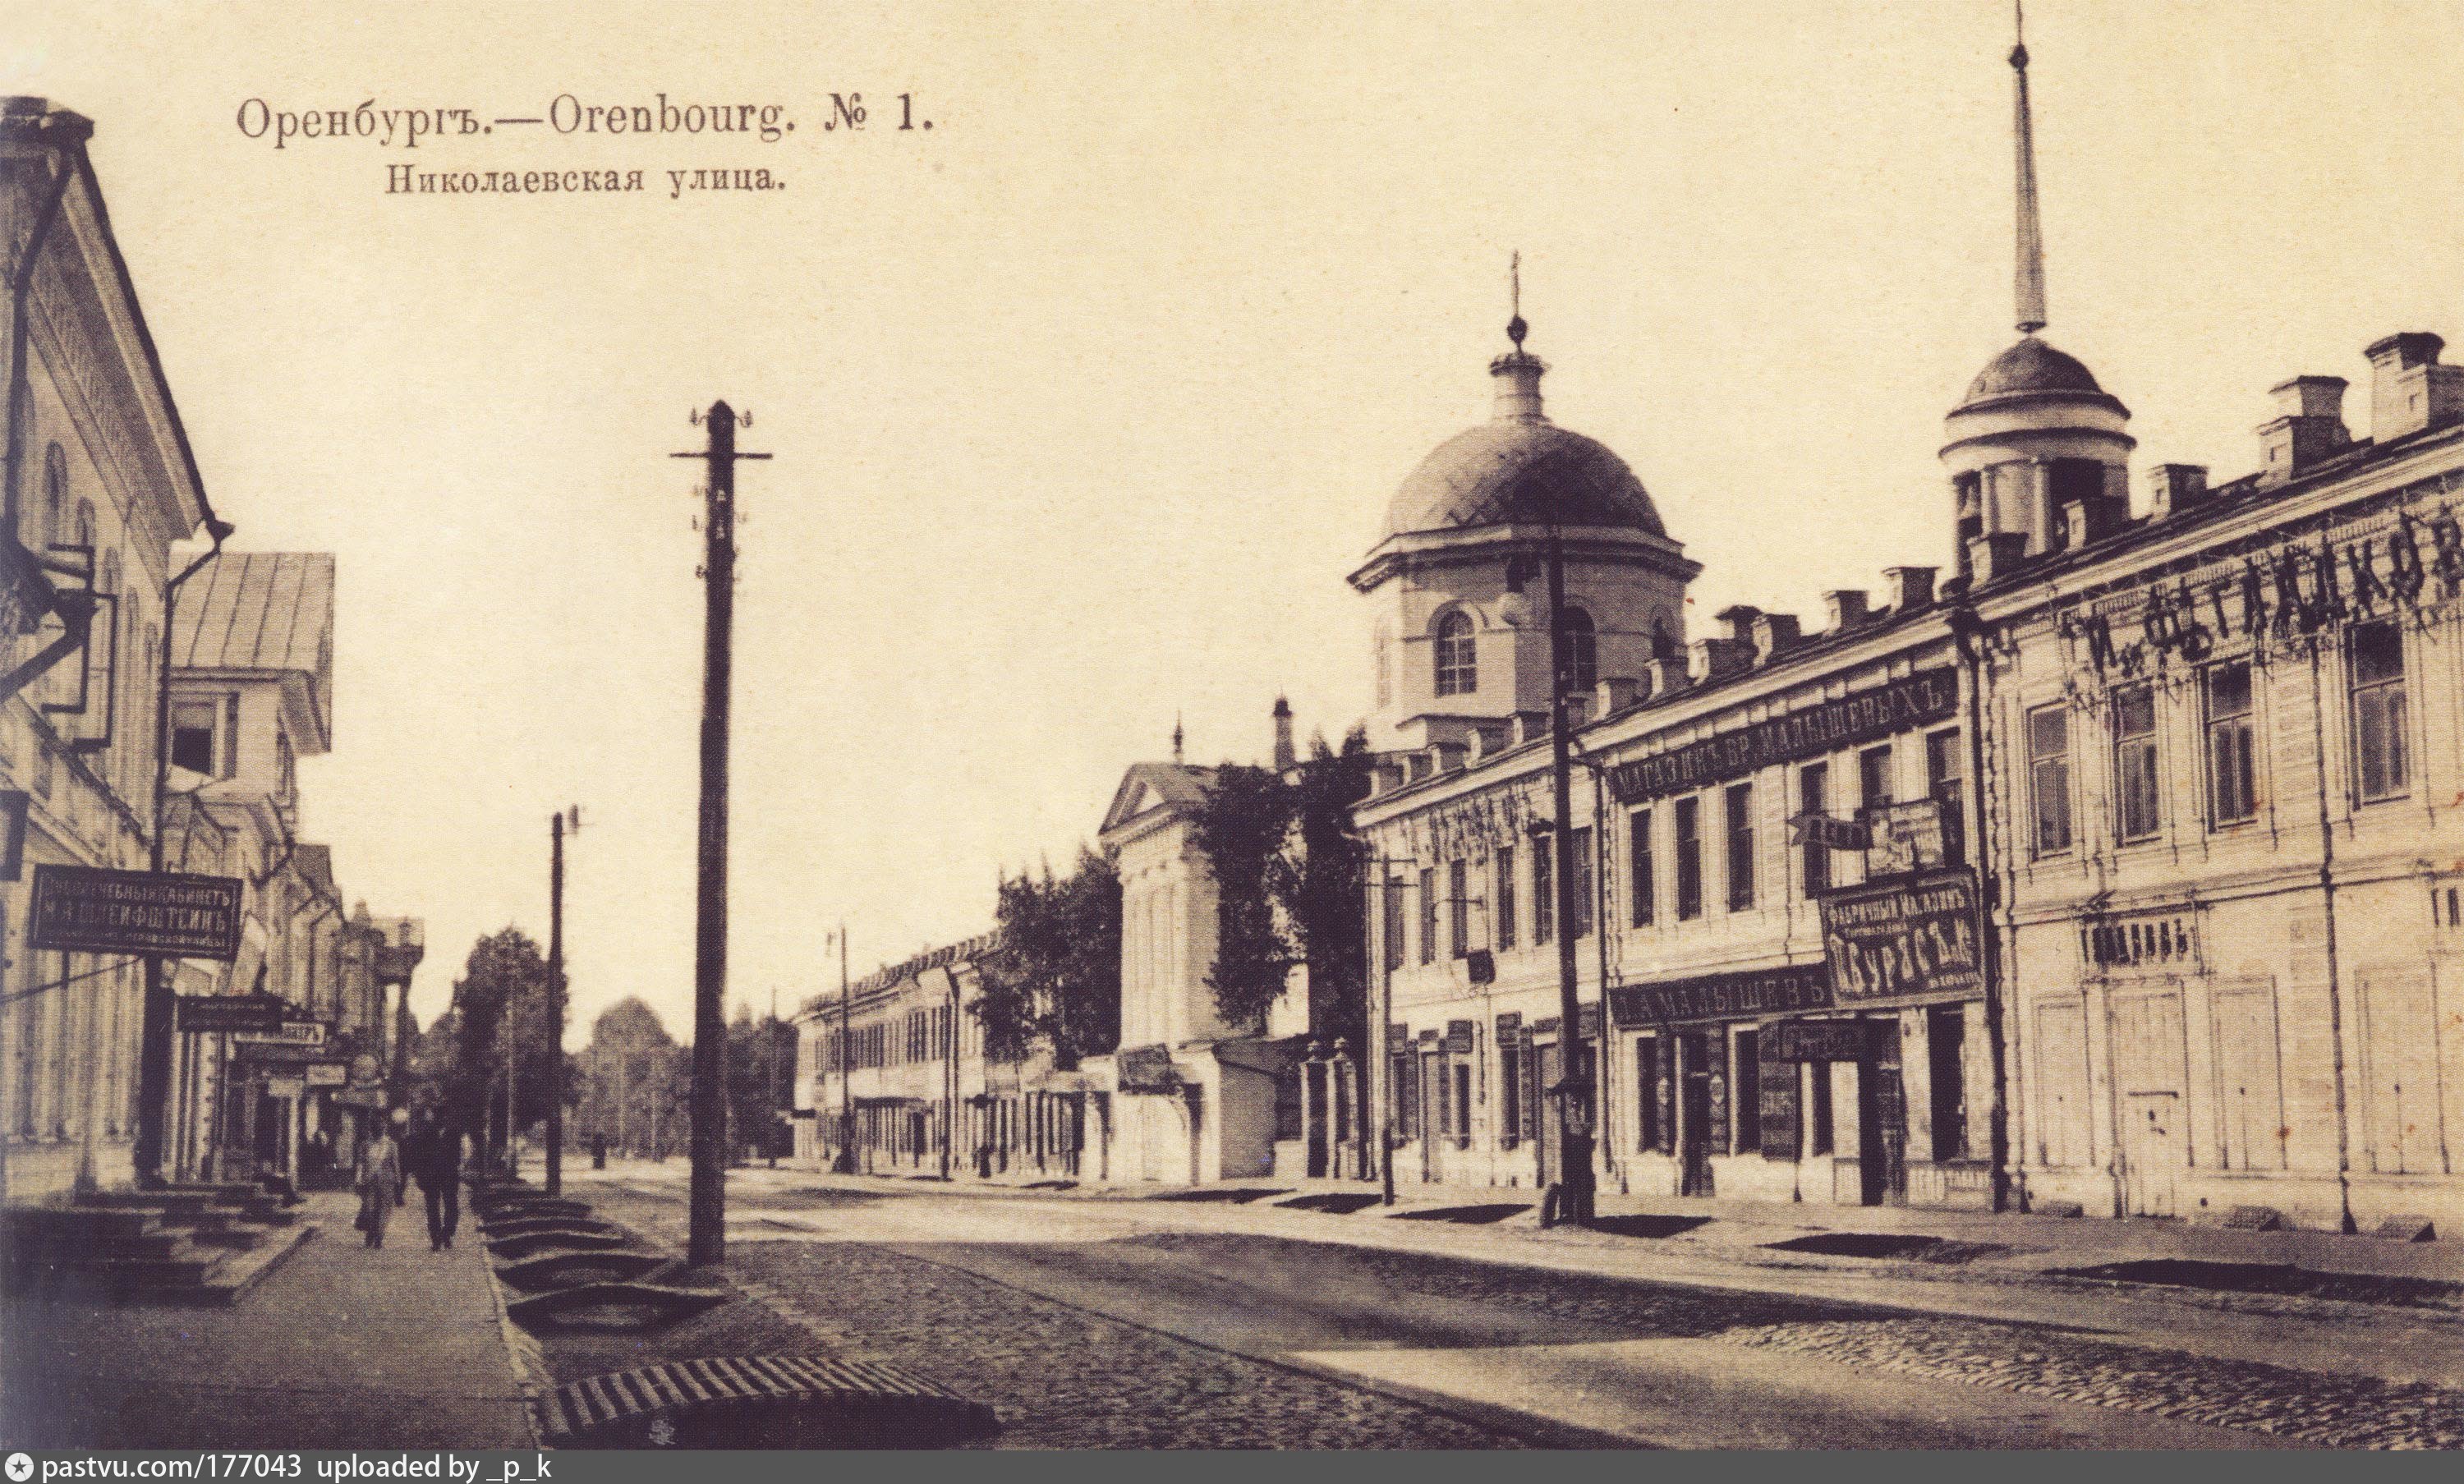 Гостиный двор Оренбург 19 век. Оренбург 19 век Николаевская улица. Оренбург 20 век.